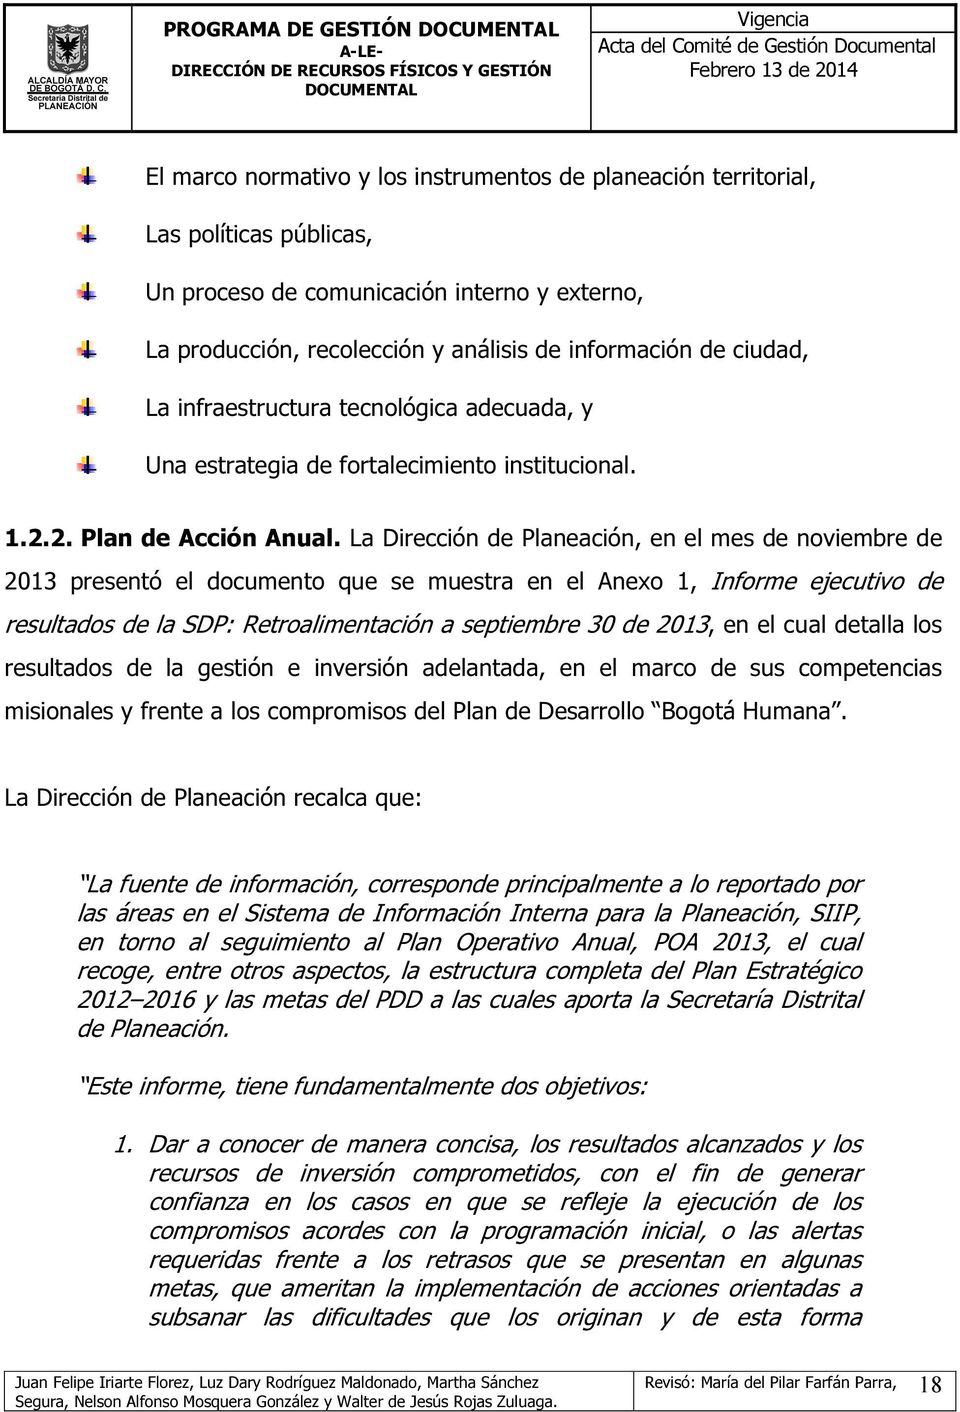 La Dirección de Planeación, en el mes de noviembre de 2013 presentó el documento que se muestra en el Anexo 1, Informe ejecutivo de resultados de la SDP: Retroalimentación a septiembre 30 de 2013, en